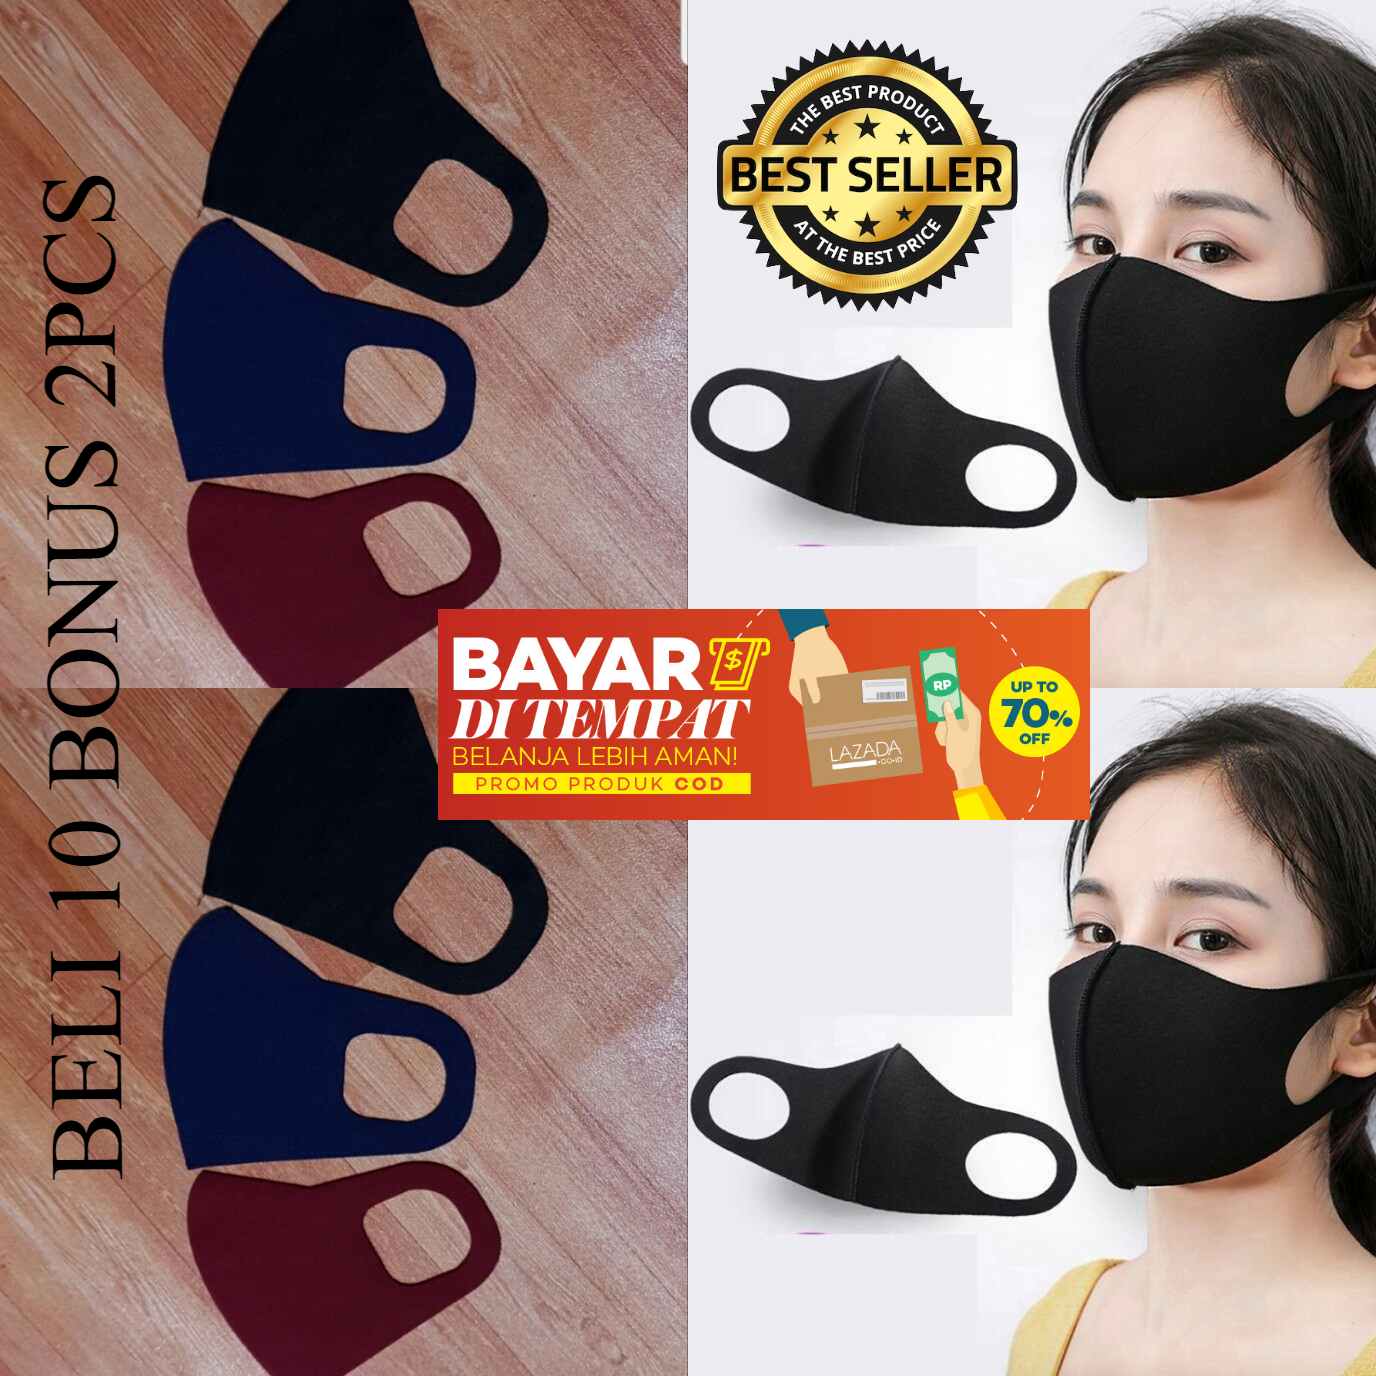 Harga Masker Sensi Hijab 1 Box Terlaris Sing Payu 0772